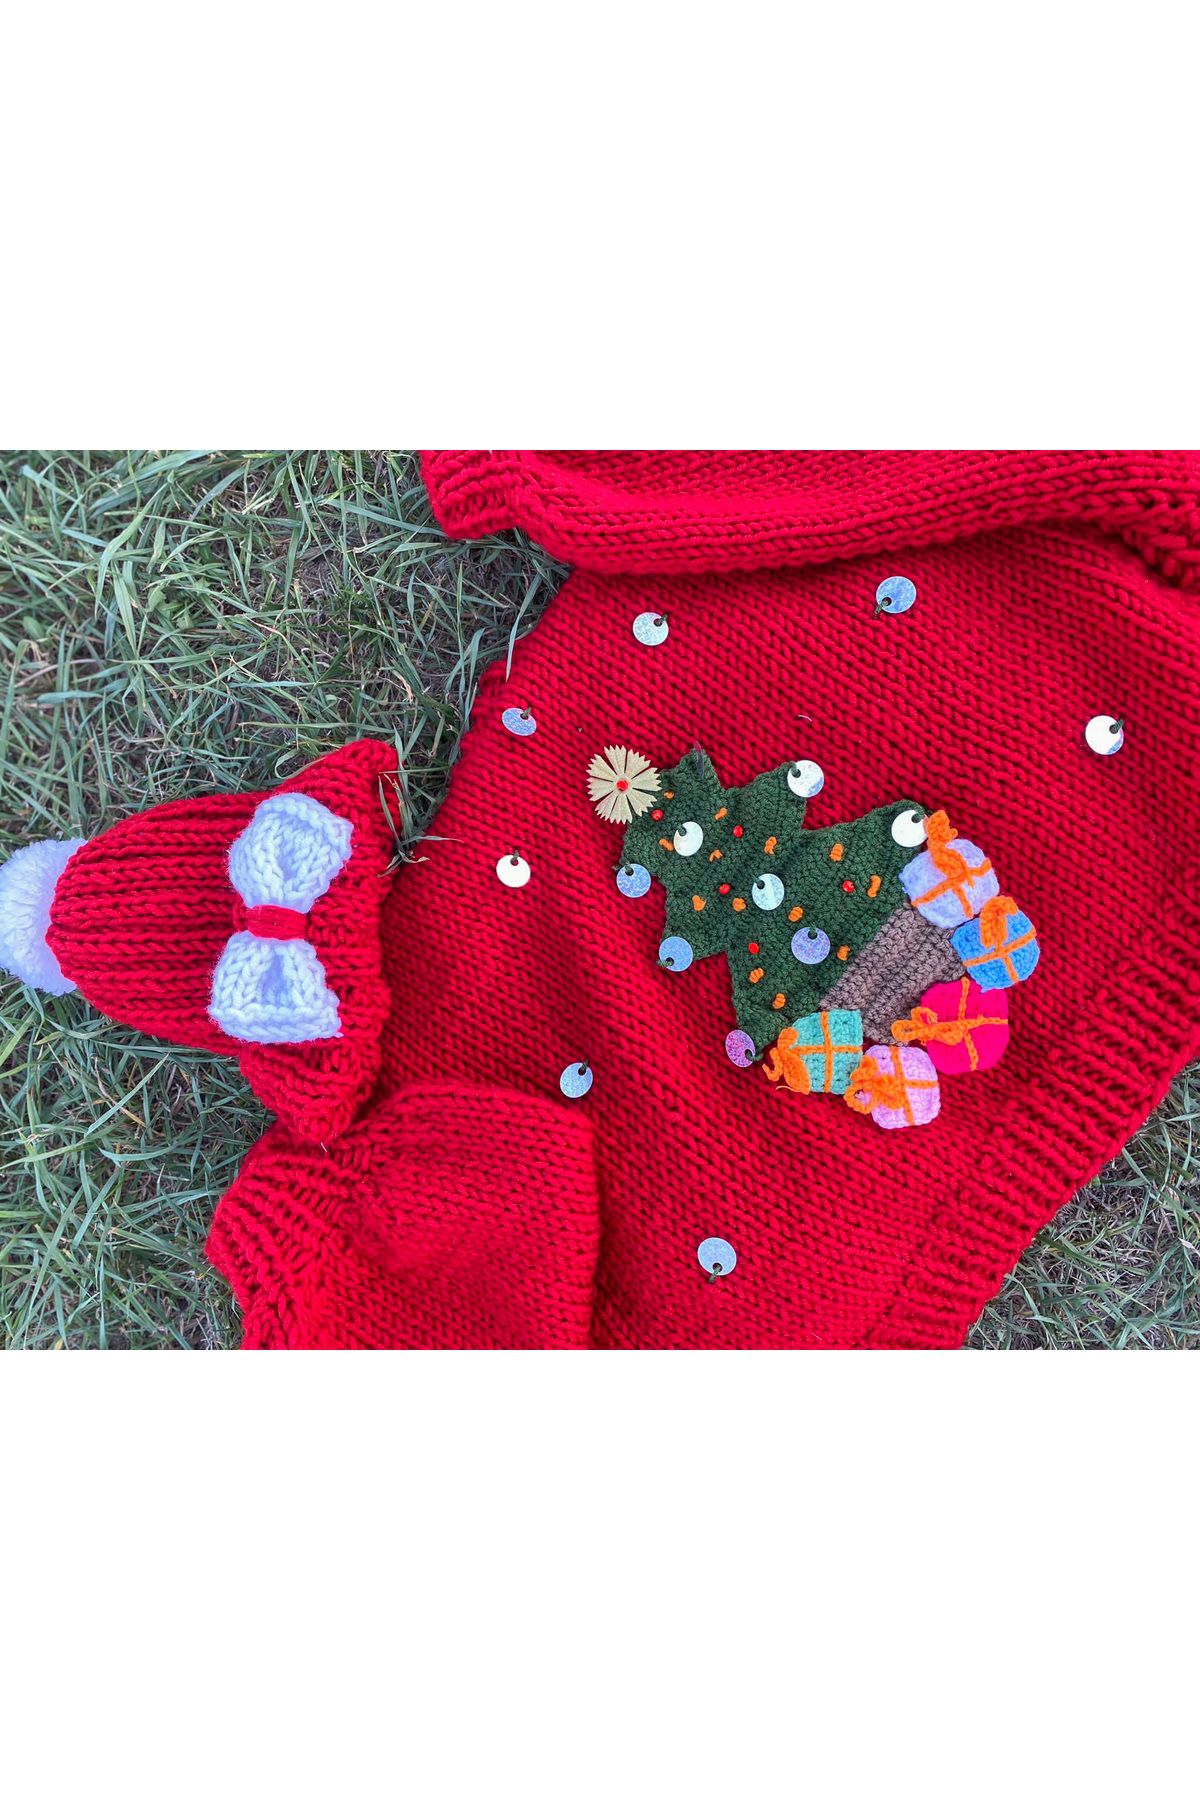 ORGANICMIRA Yılbaşı Crop Hırka ve Şapka Takım Kırmızı Yeni Yıl Ceket Merry Christmas Hoodie Özel Tasarım Chunky